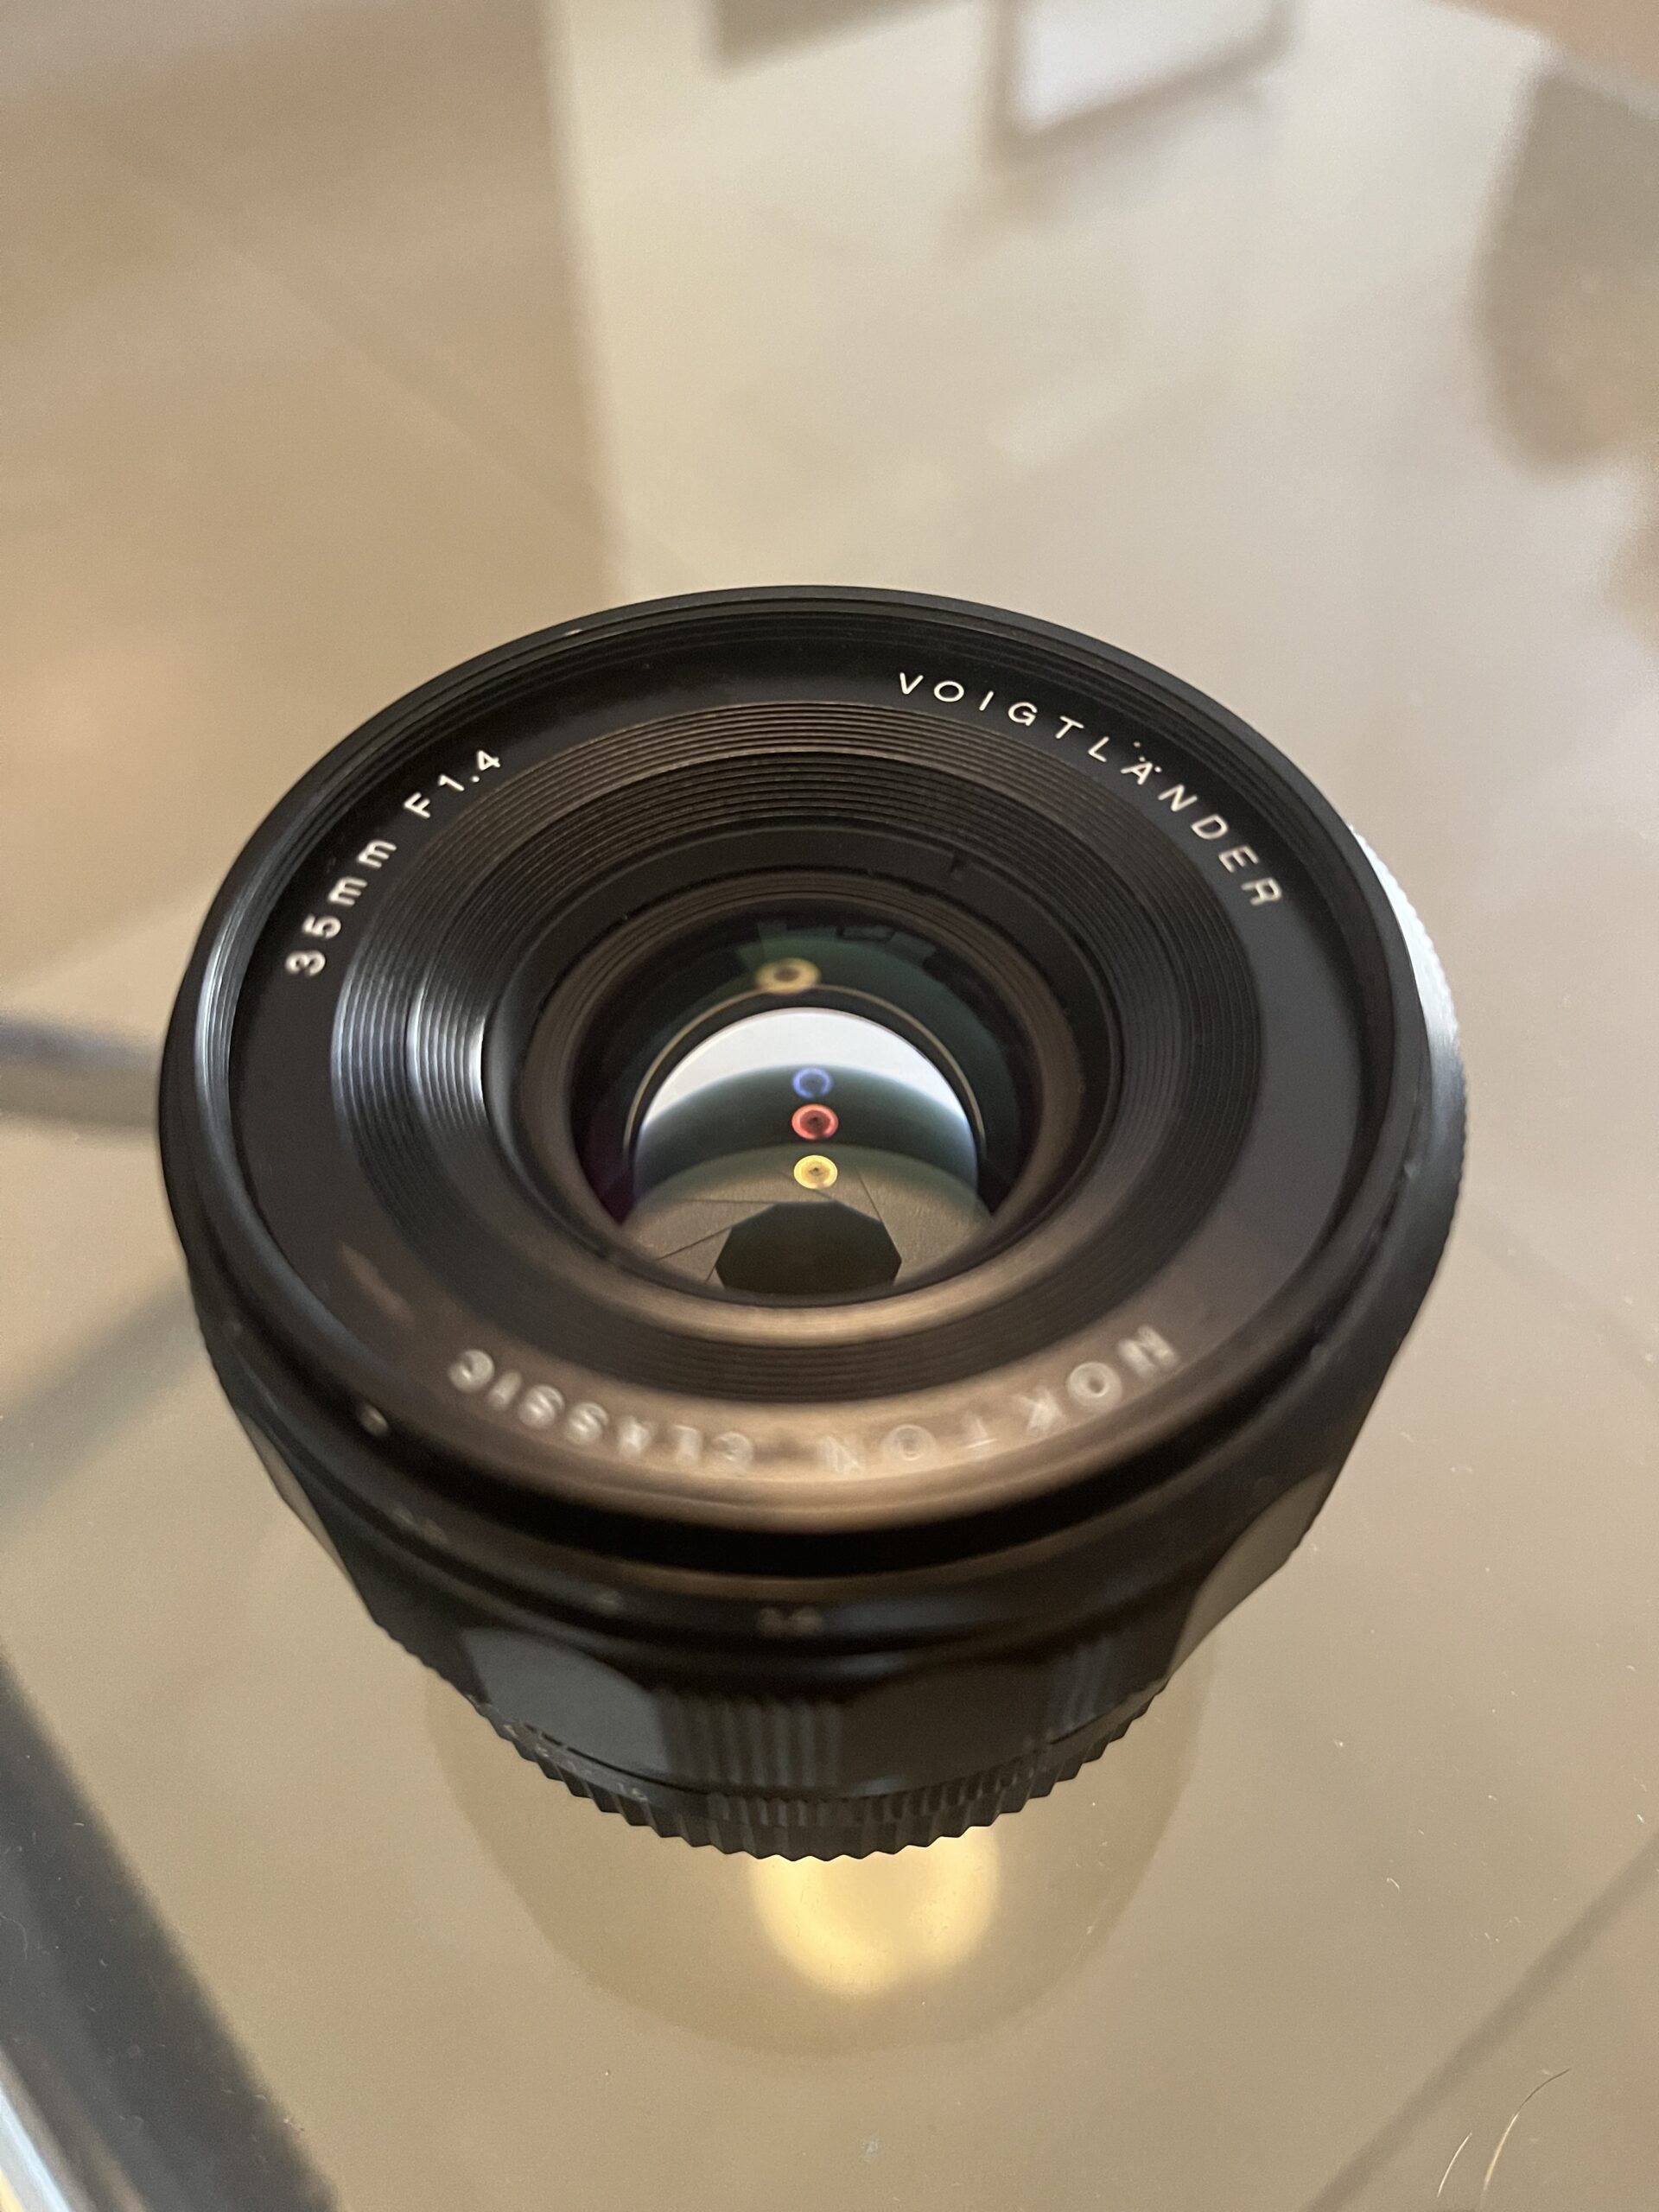 35mm lens vs 50mm lens